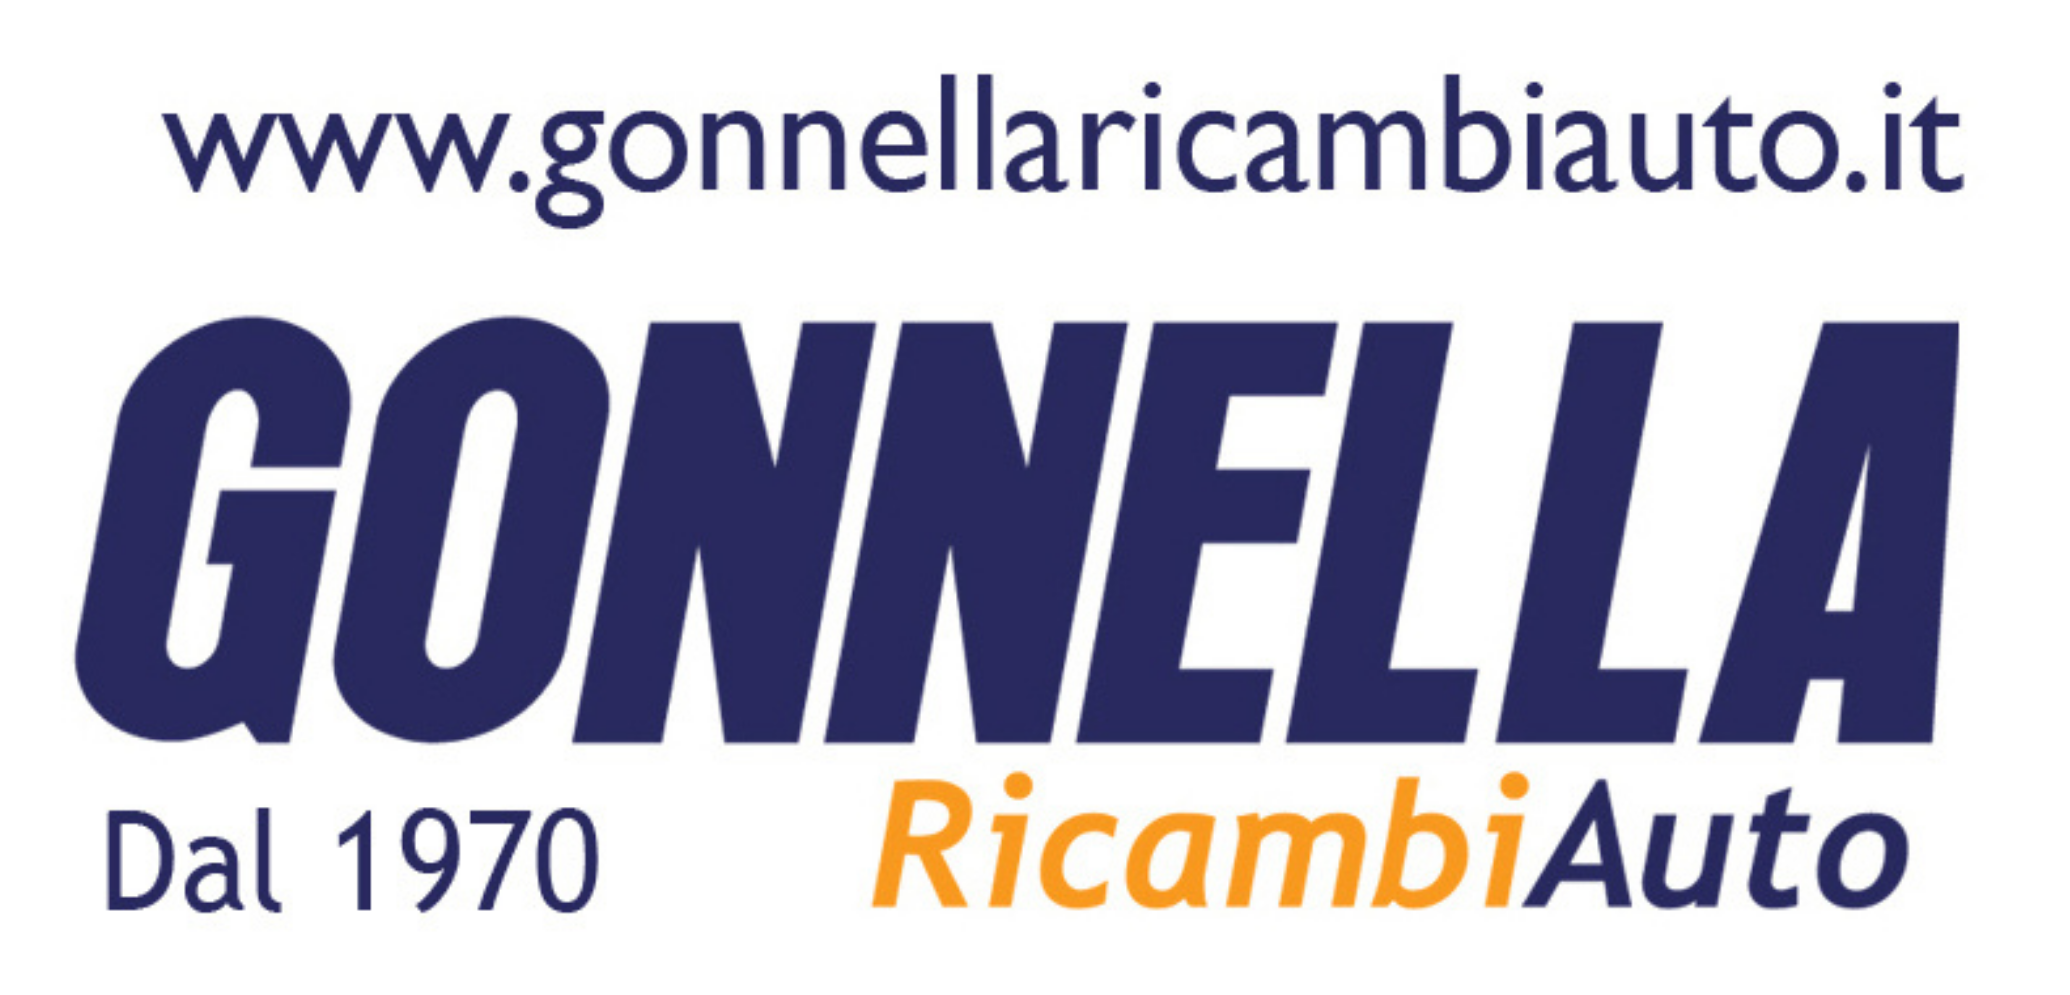 Gonnella Ricambi Auto